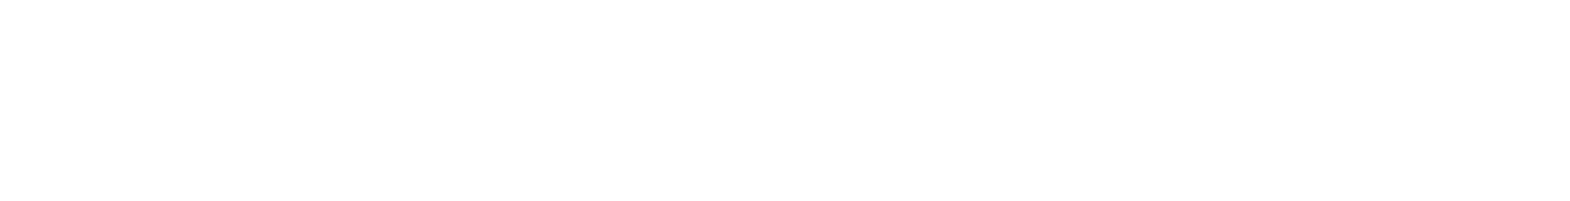 Pkp Cargo Logo groß für dunkle Hintergründe (transparentes PNG)